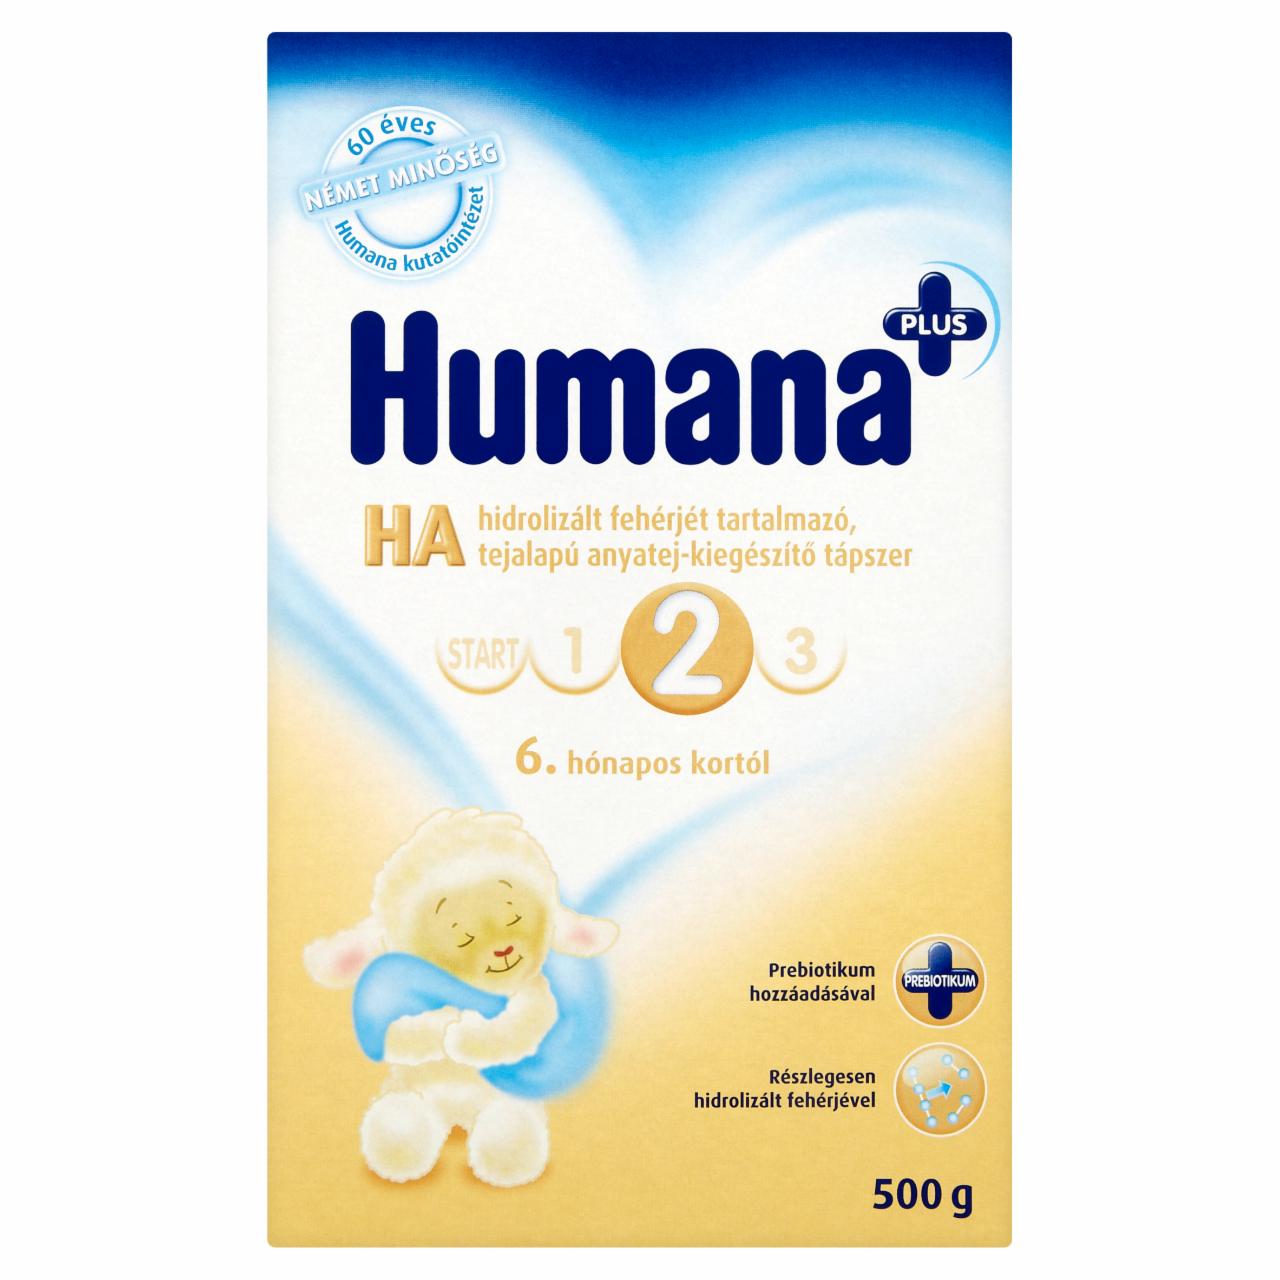 Képek - Humana HA 2 Plus tejalapú anyatej-kiegészítő tápszer 6 hónapos kortól 500 g